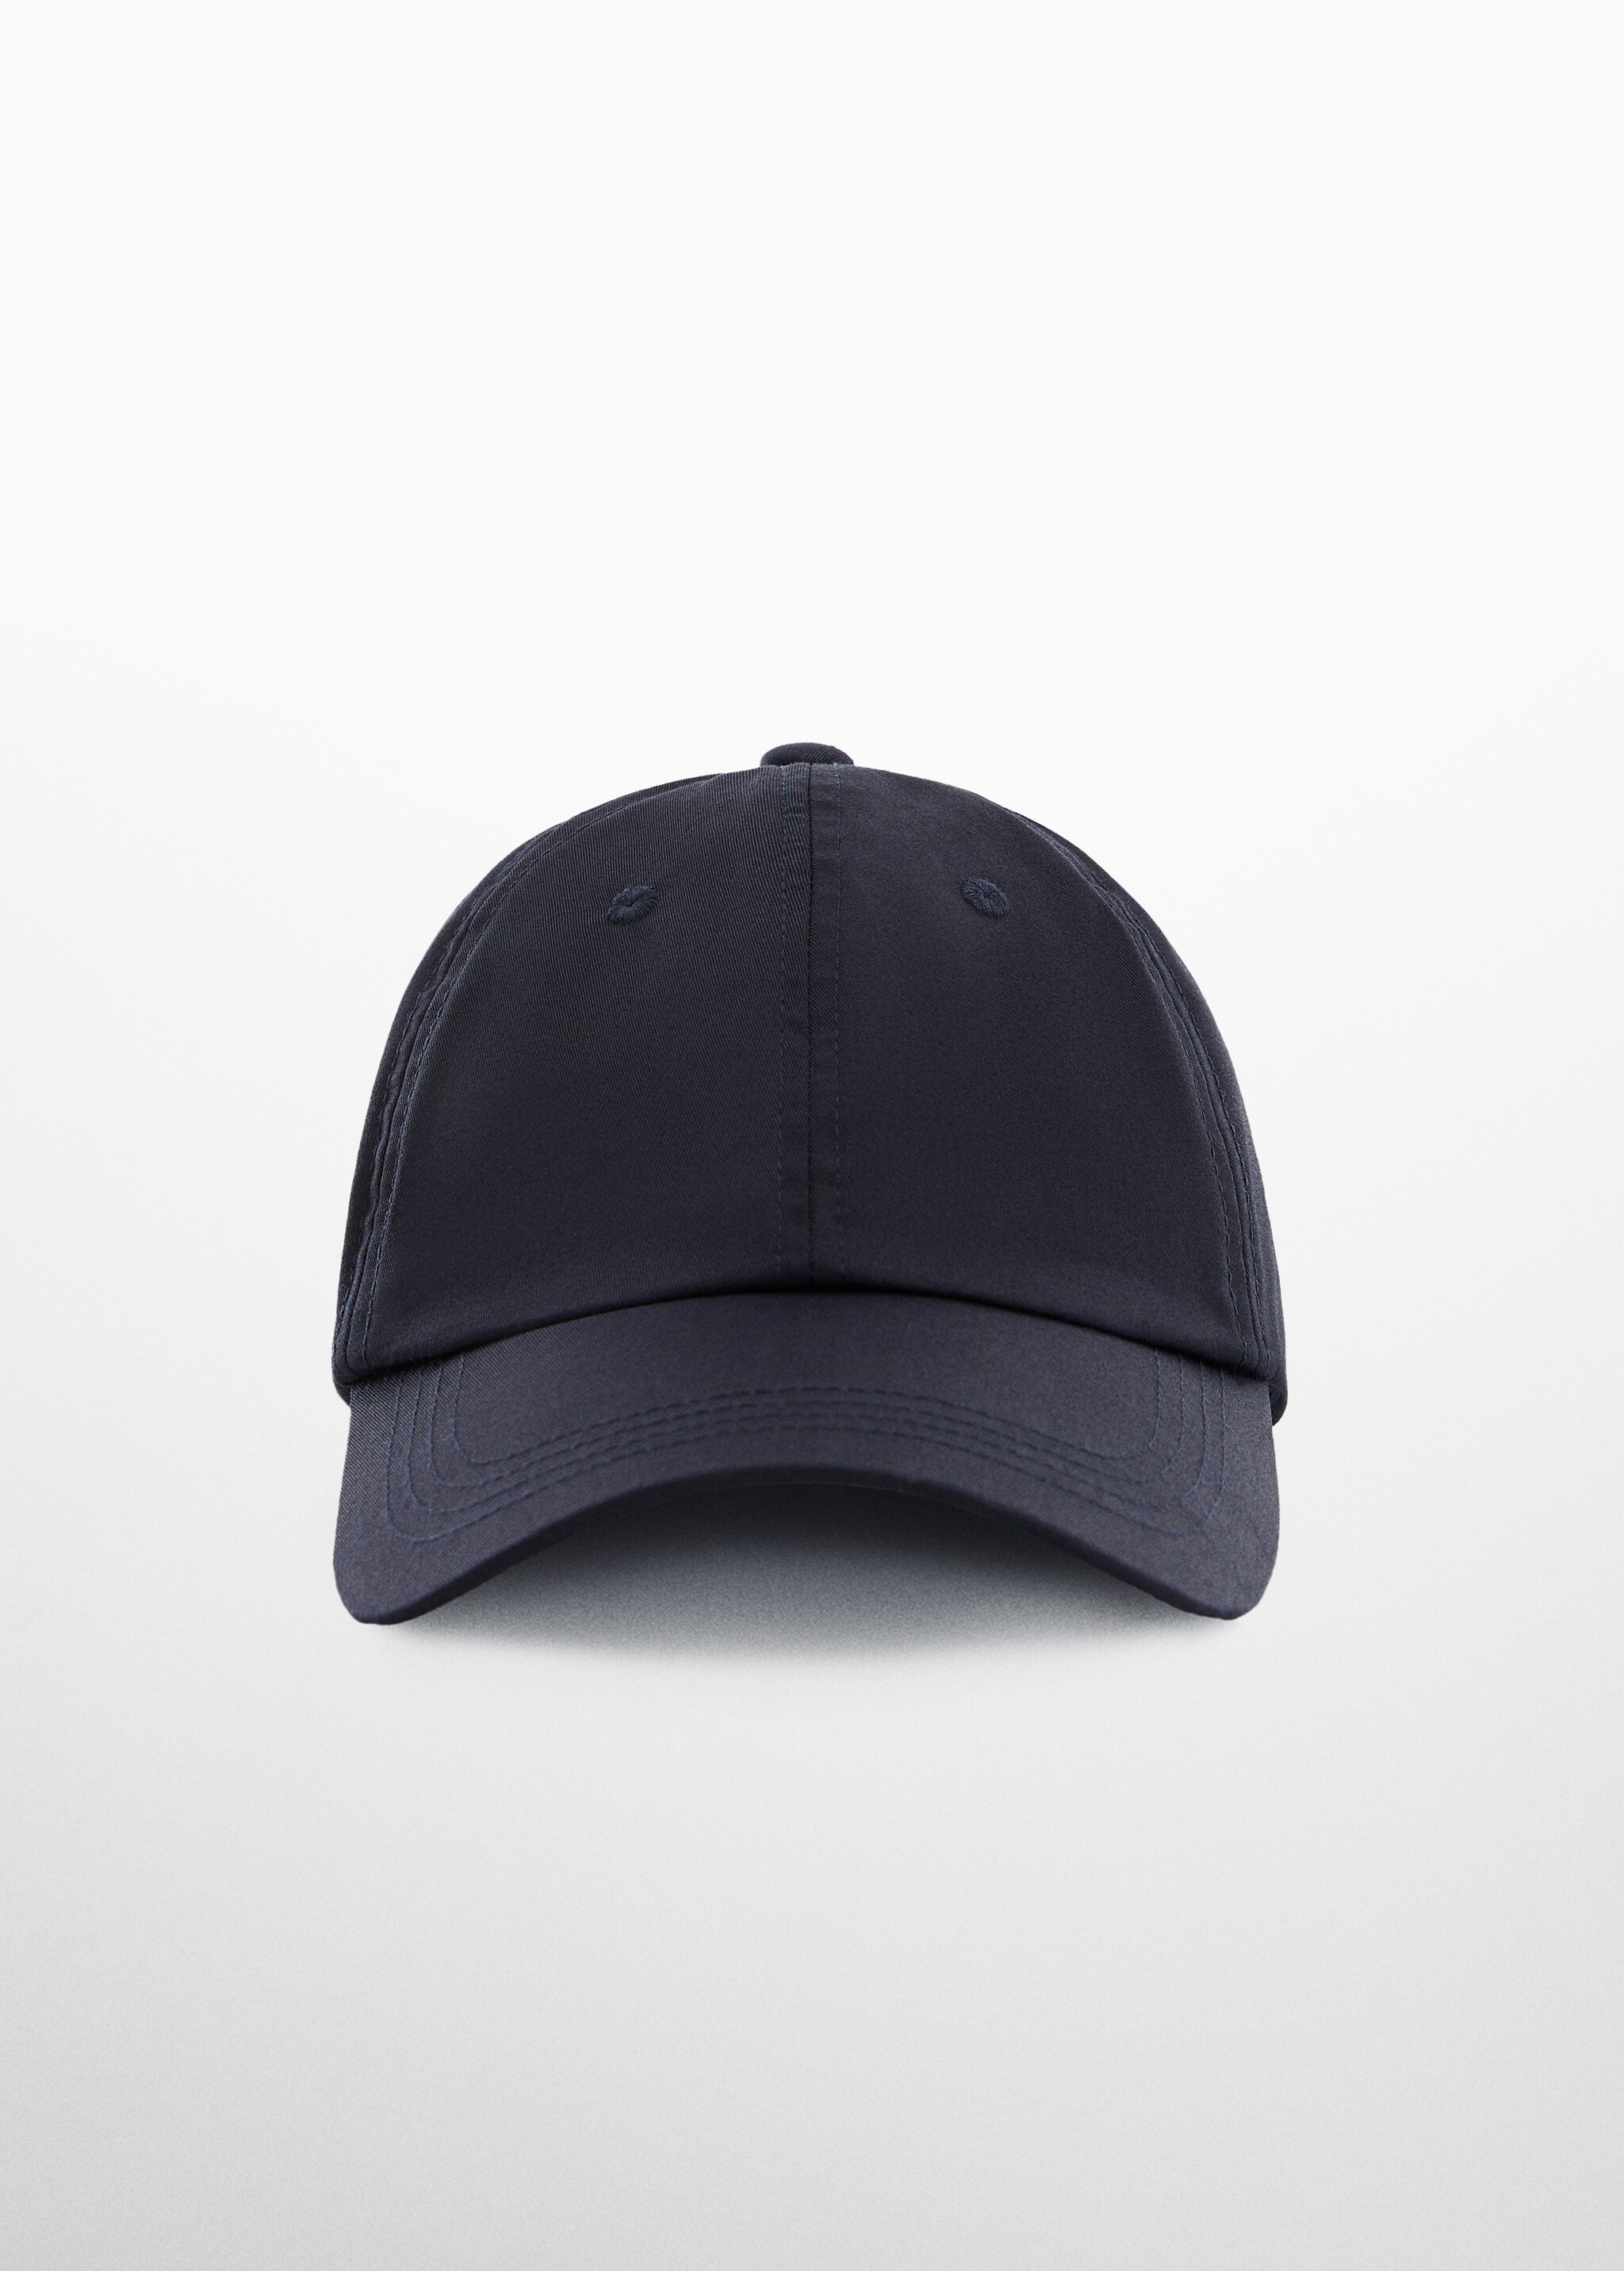 Cotton visor cap - Medium plane